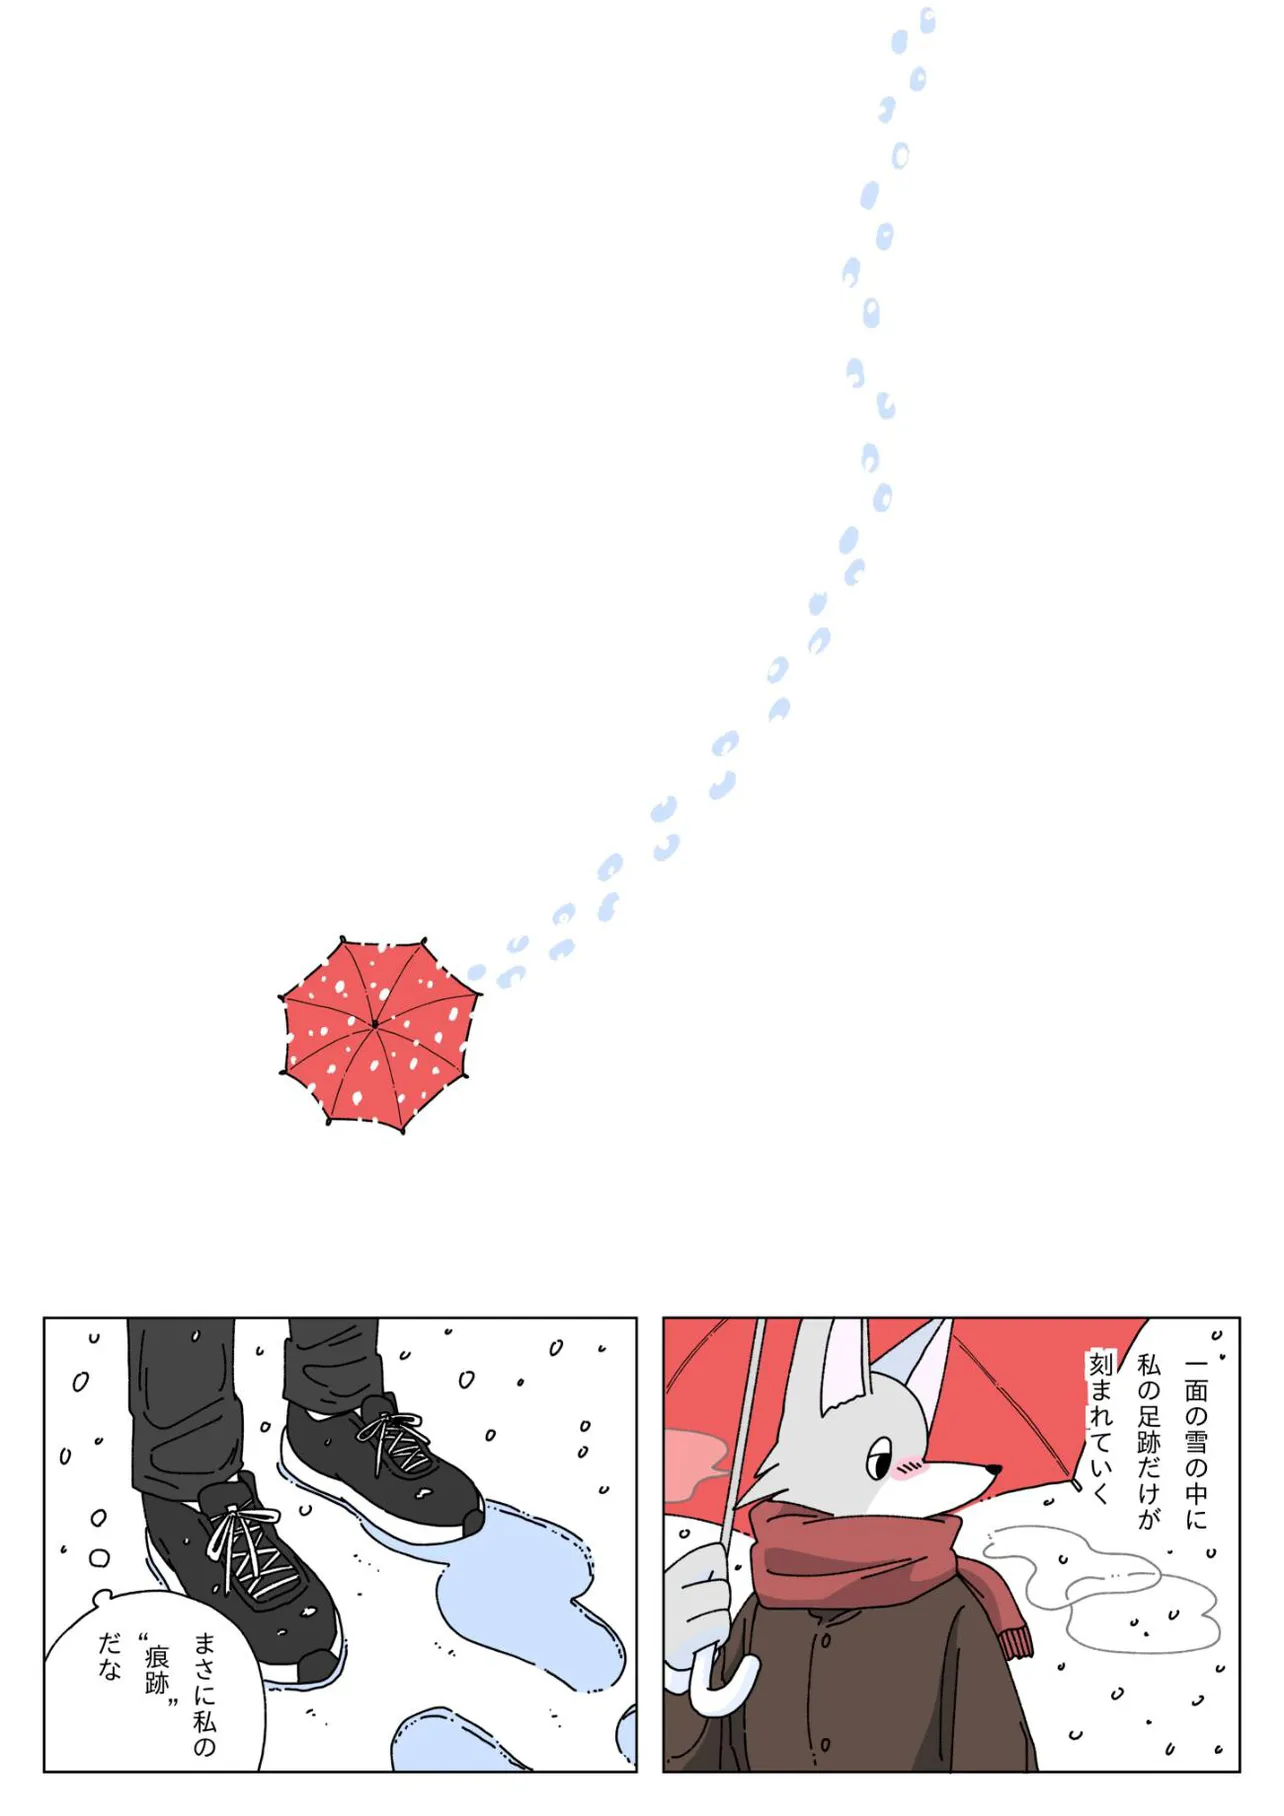 『大雪の日に豆腐を食べる話』(10／12)